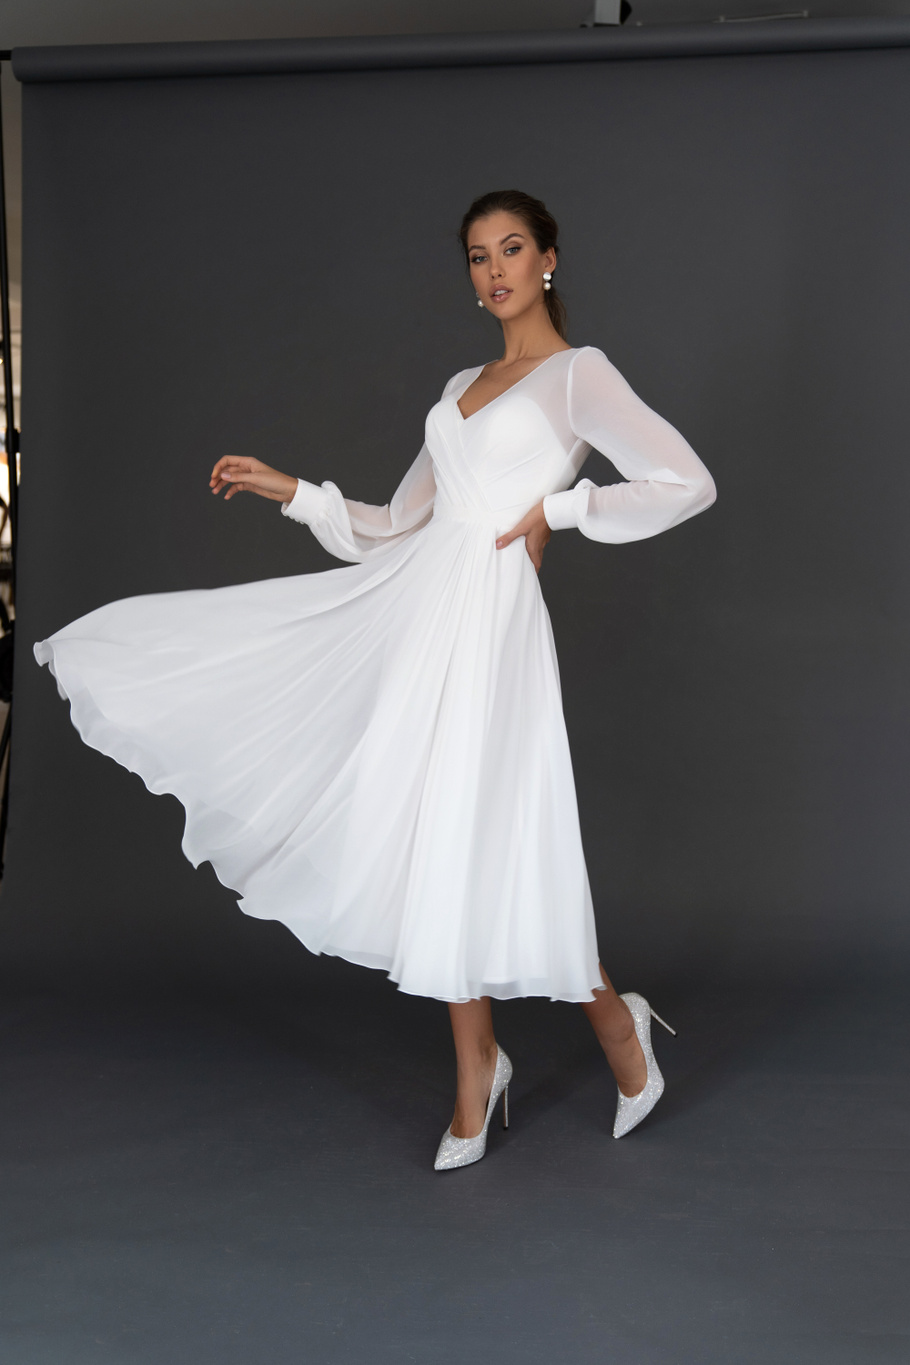 Свадебное платье «Осфадэль миди» Марта — купить в Ярославле платье Осфадэль из коллекции 2021 года